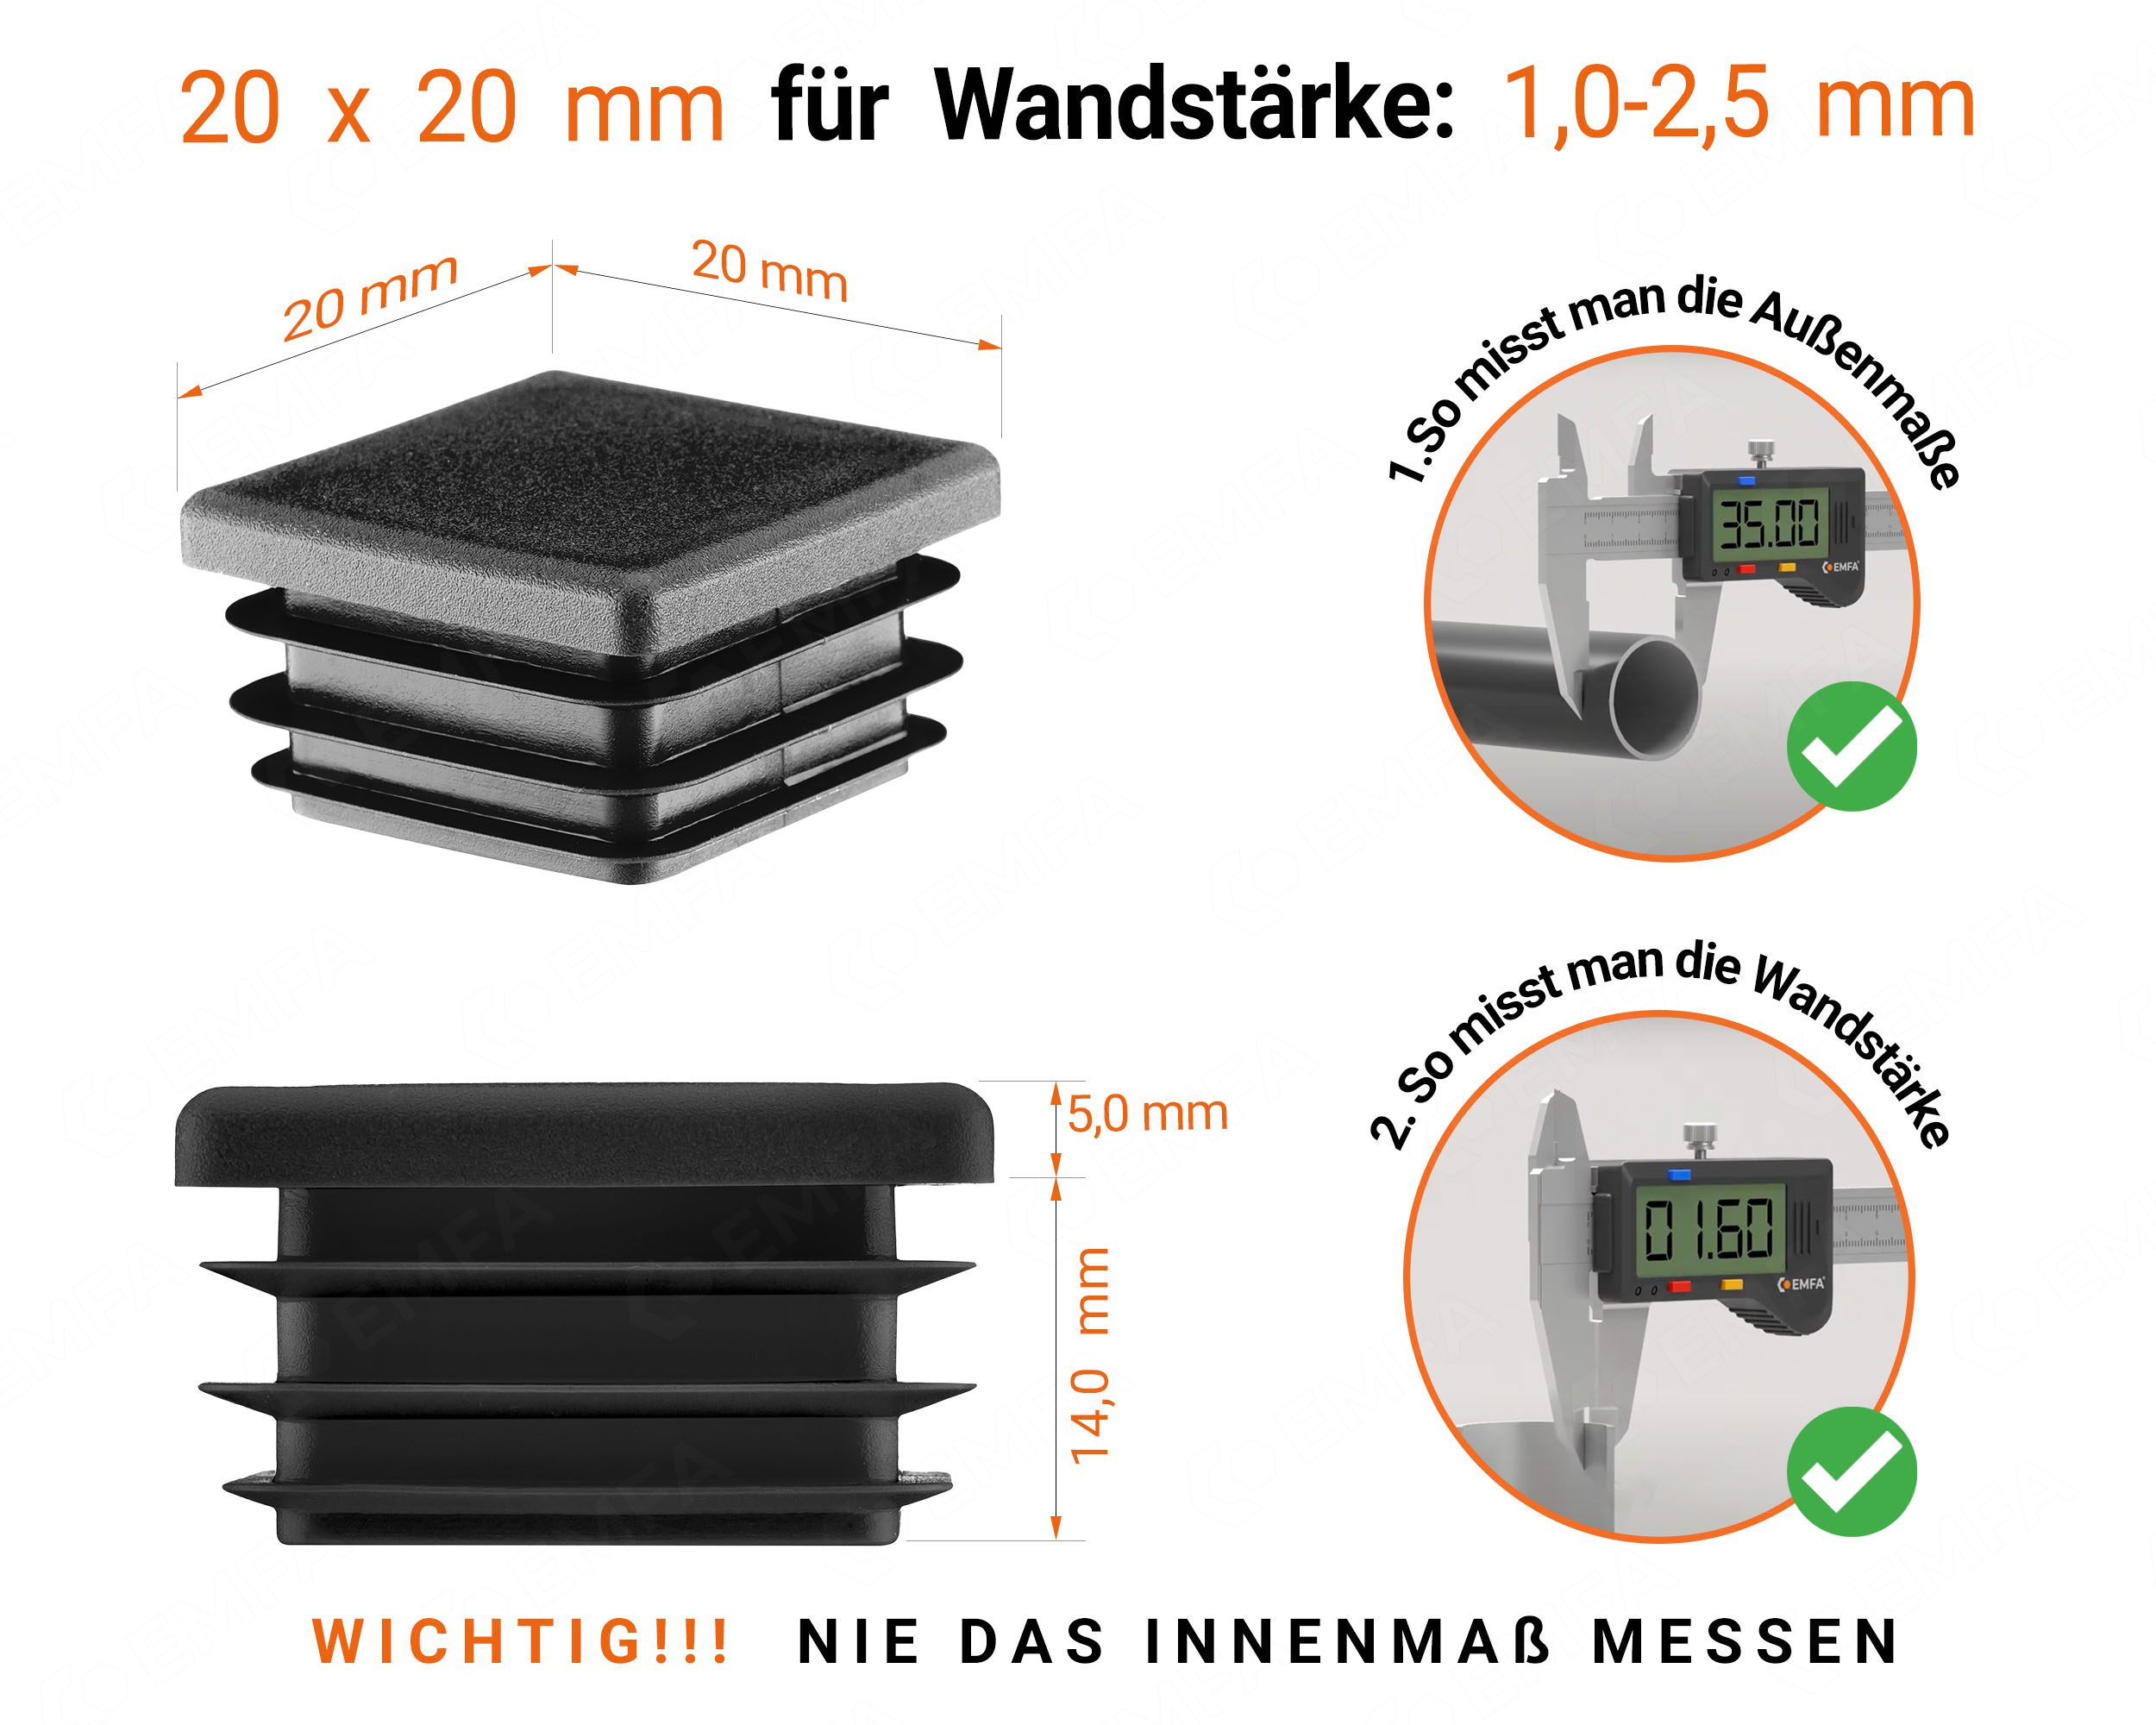 Schwarze Endkappe für Vierkantrohre in der Größe 20x20 mm mit technischen Abmessungen und Anleitung für korrekte Messung